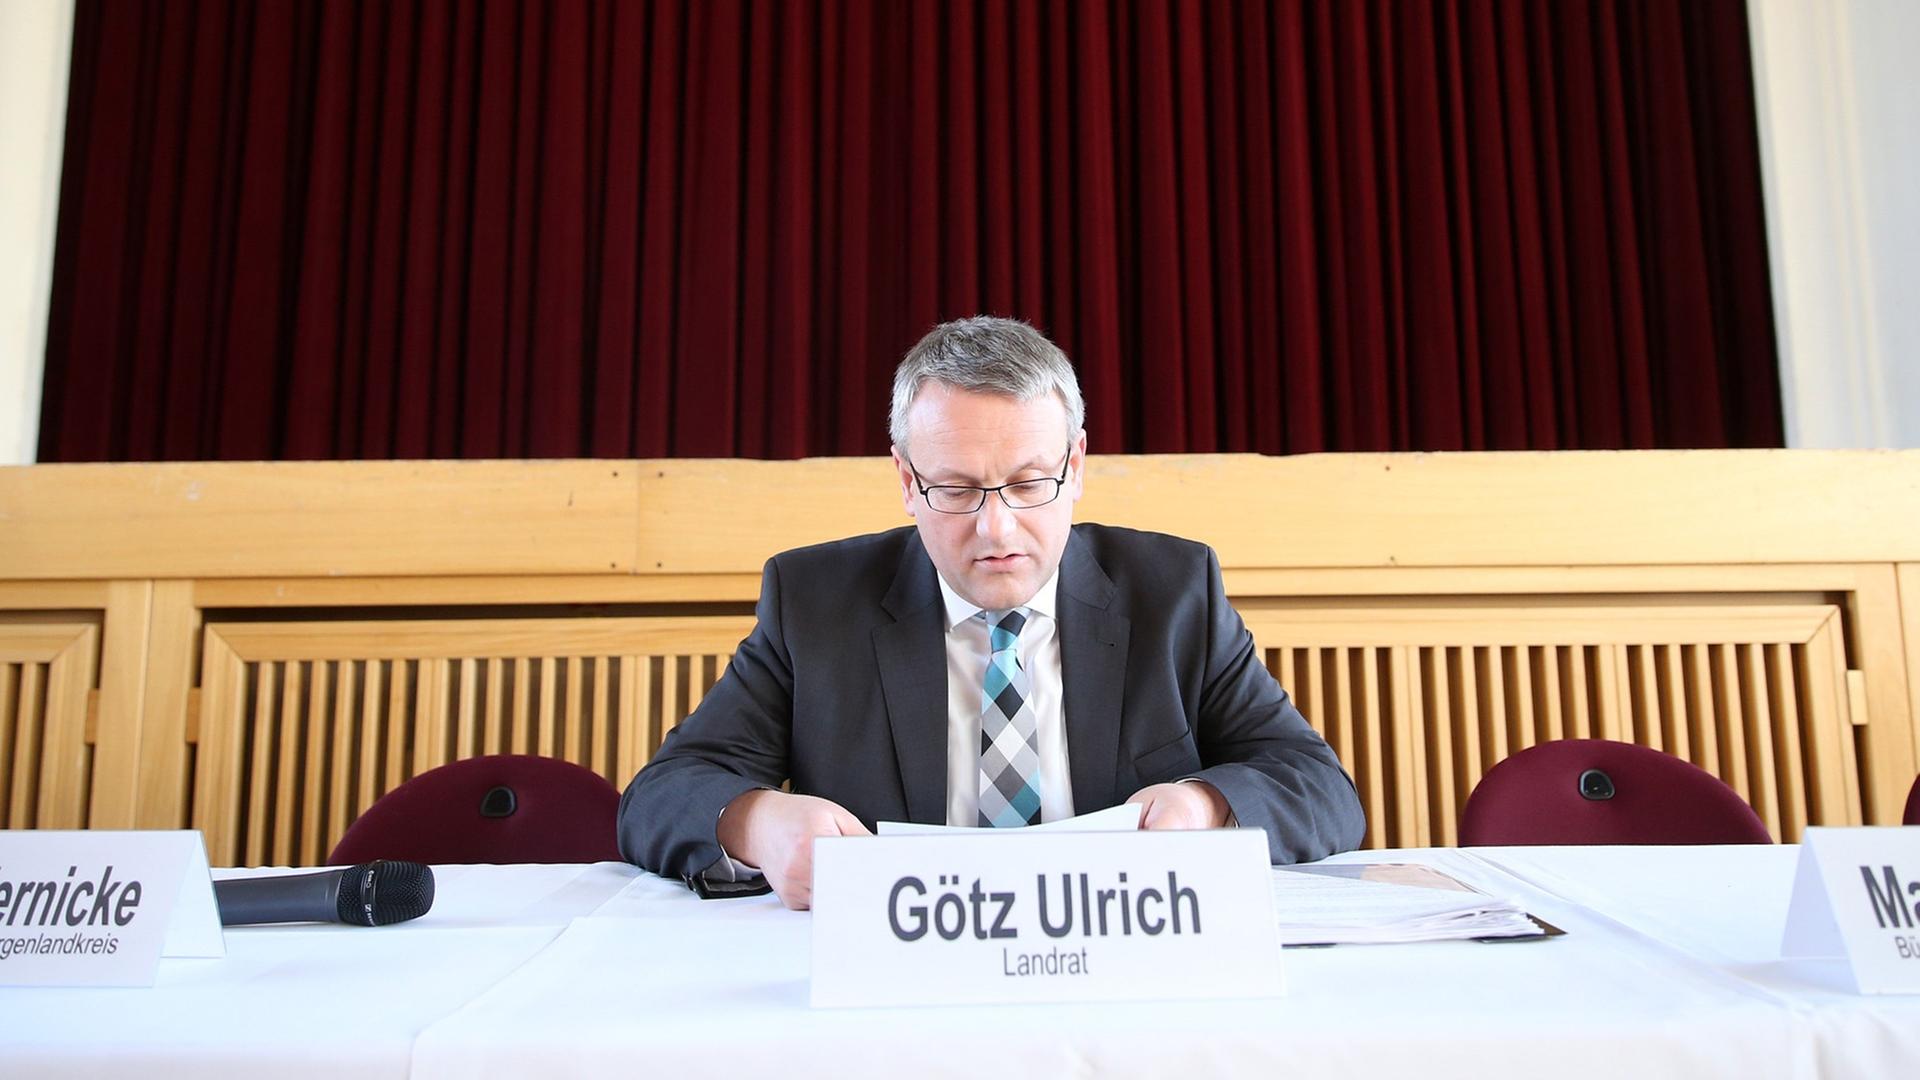 Landrat Götz Ulrich (CDU) sitzt vor einer Bürgerversammlung am 31.03.2015 in einem Veranstaltungszentrum in Alttröglitz (Sachsen-Anhalt).